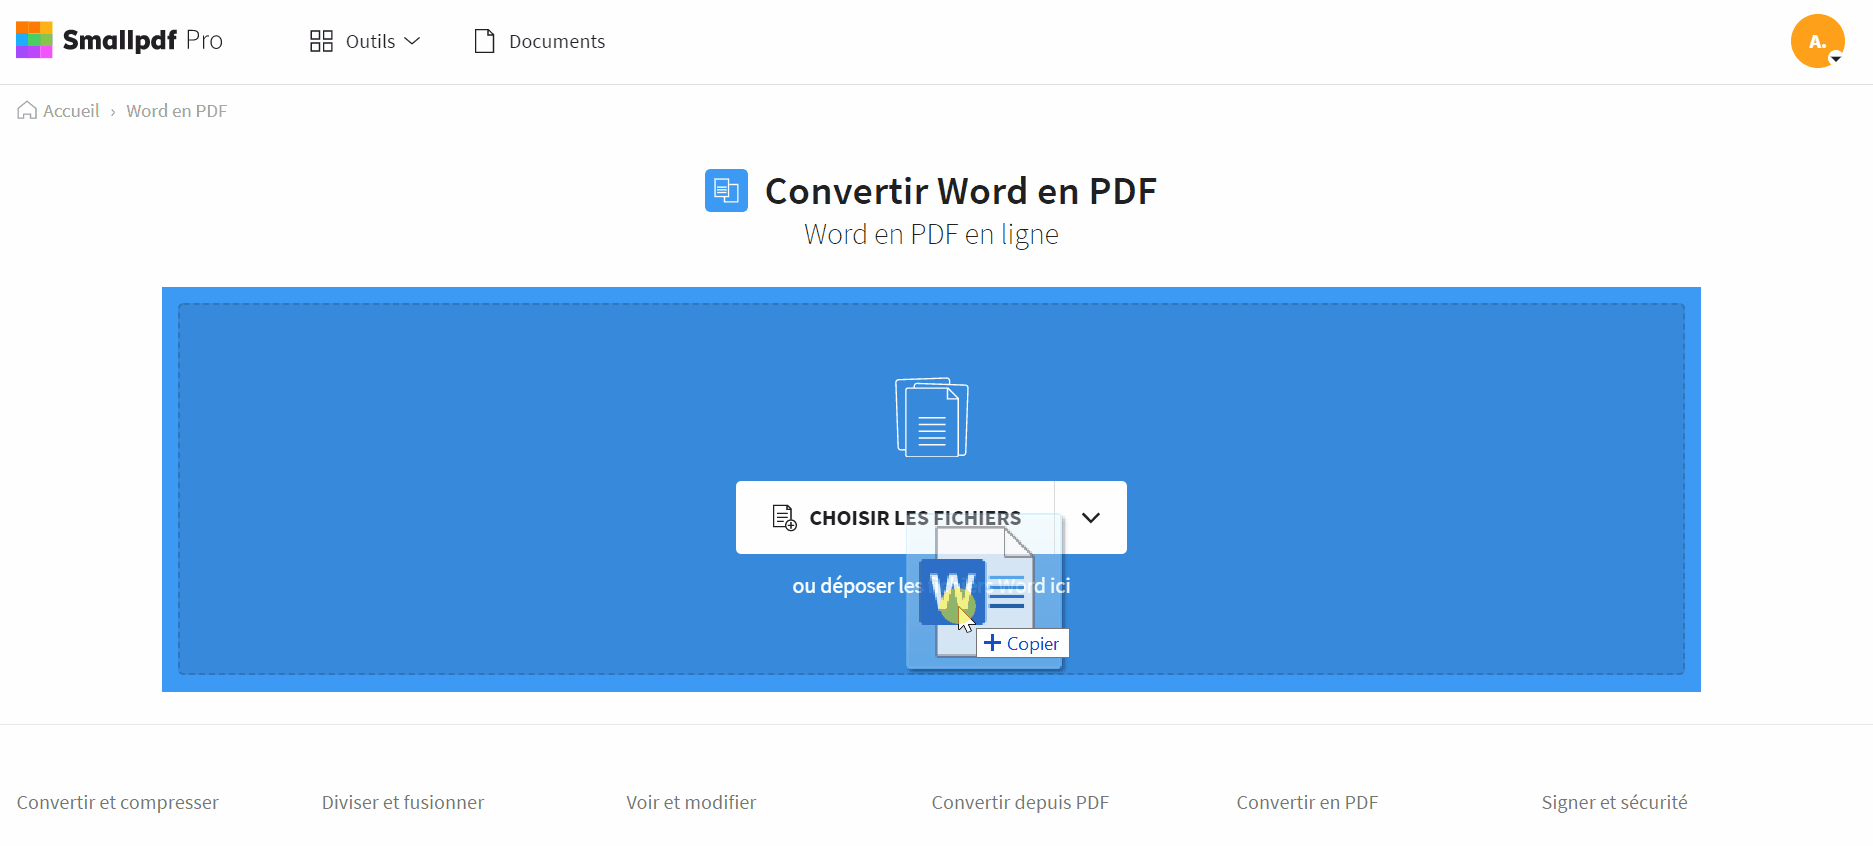 2021-08-19 - Word en PDF – Convertir des fichiers Word en PDF gratuitement en ligne - outil Word en PDF sur Smallpdf